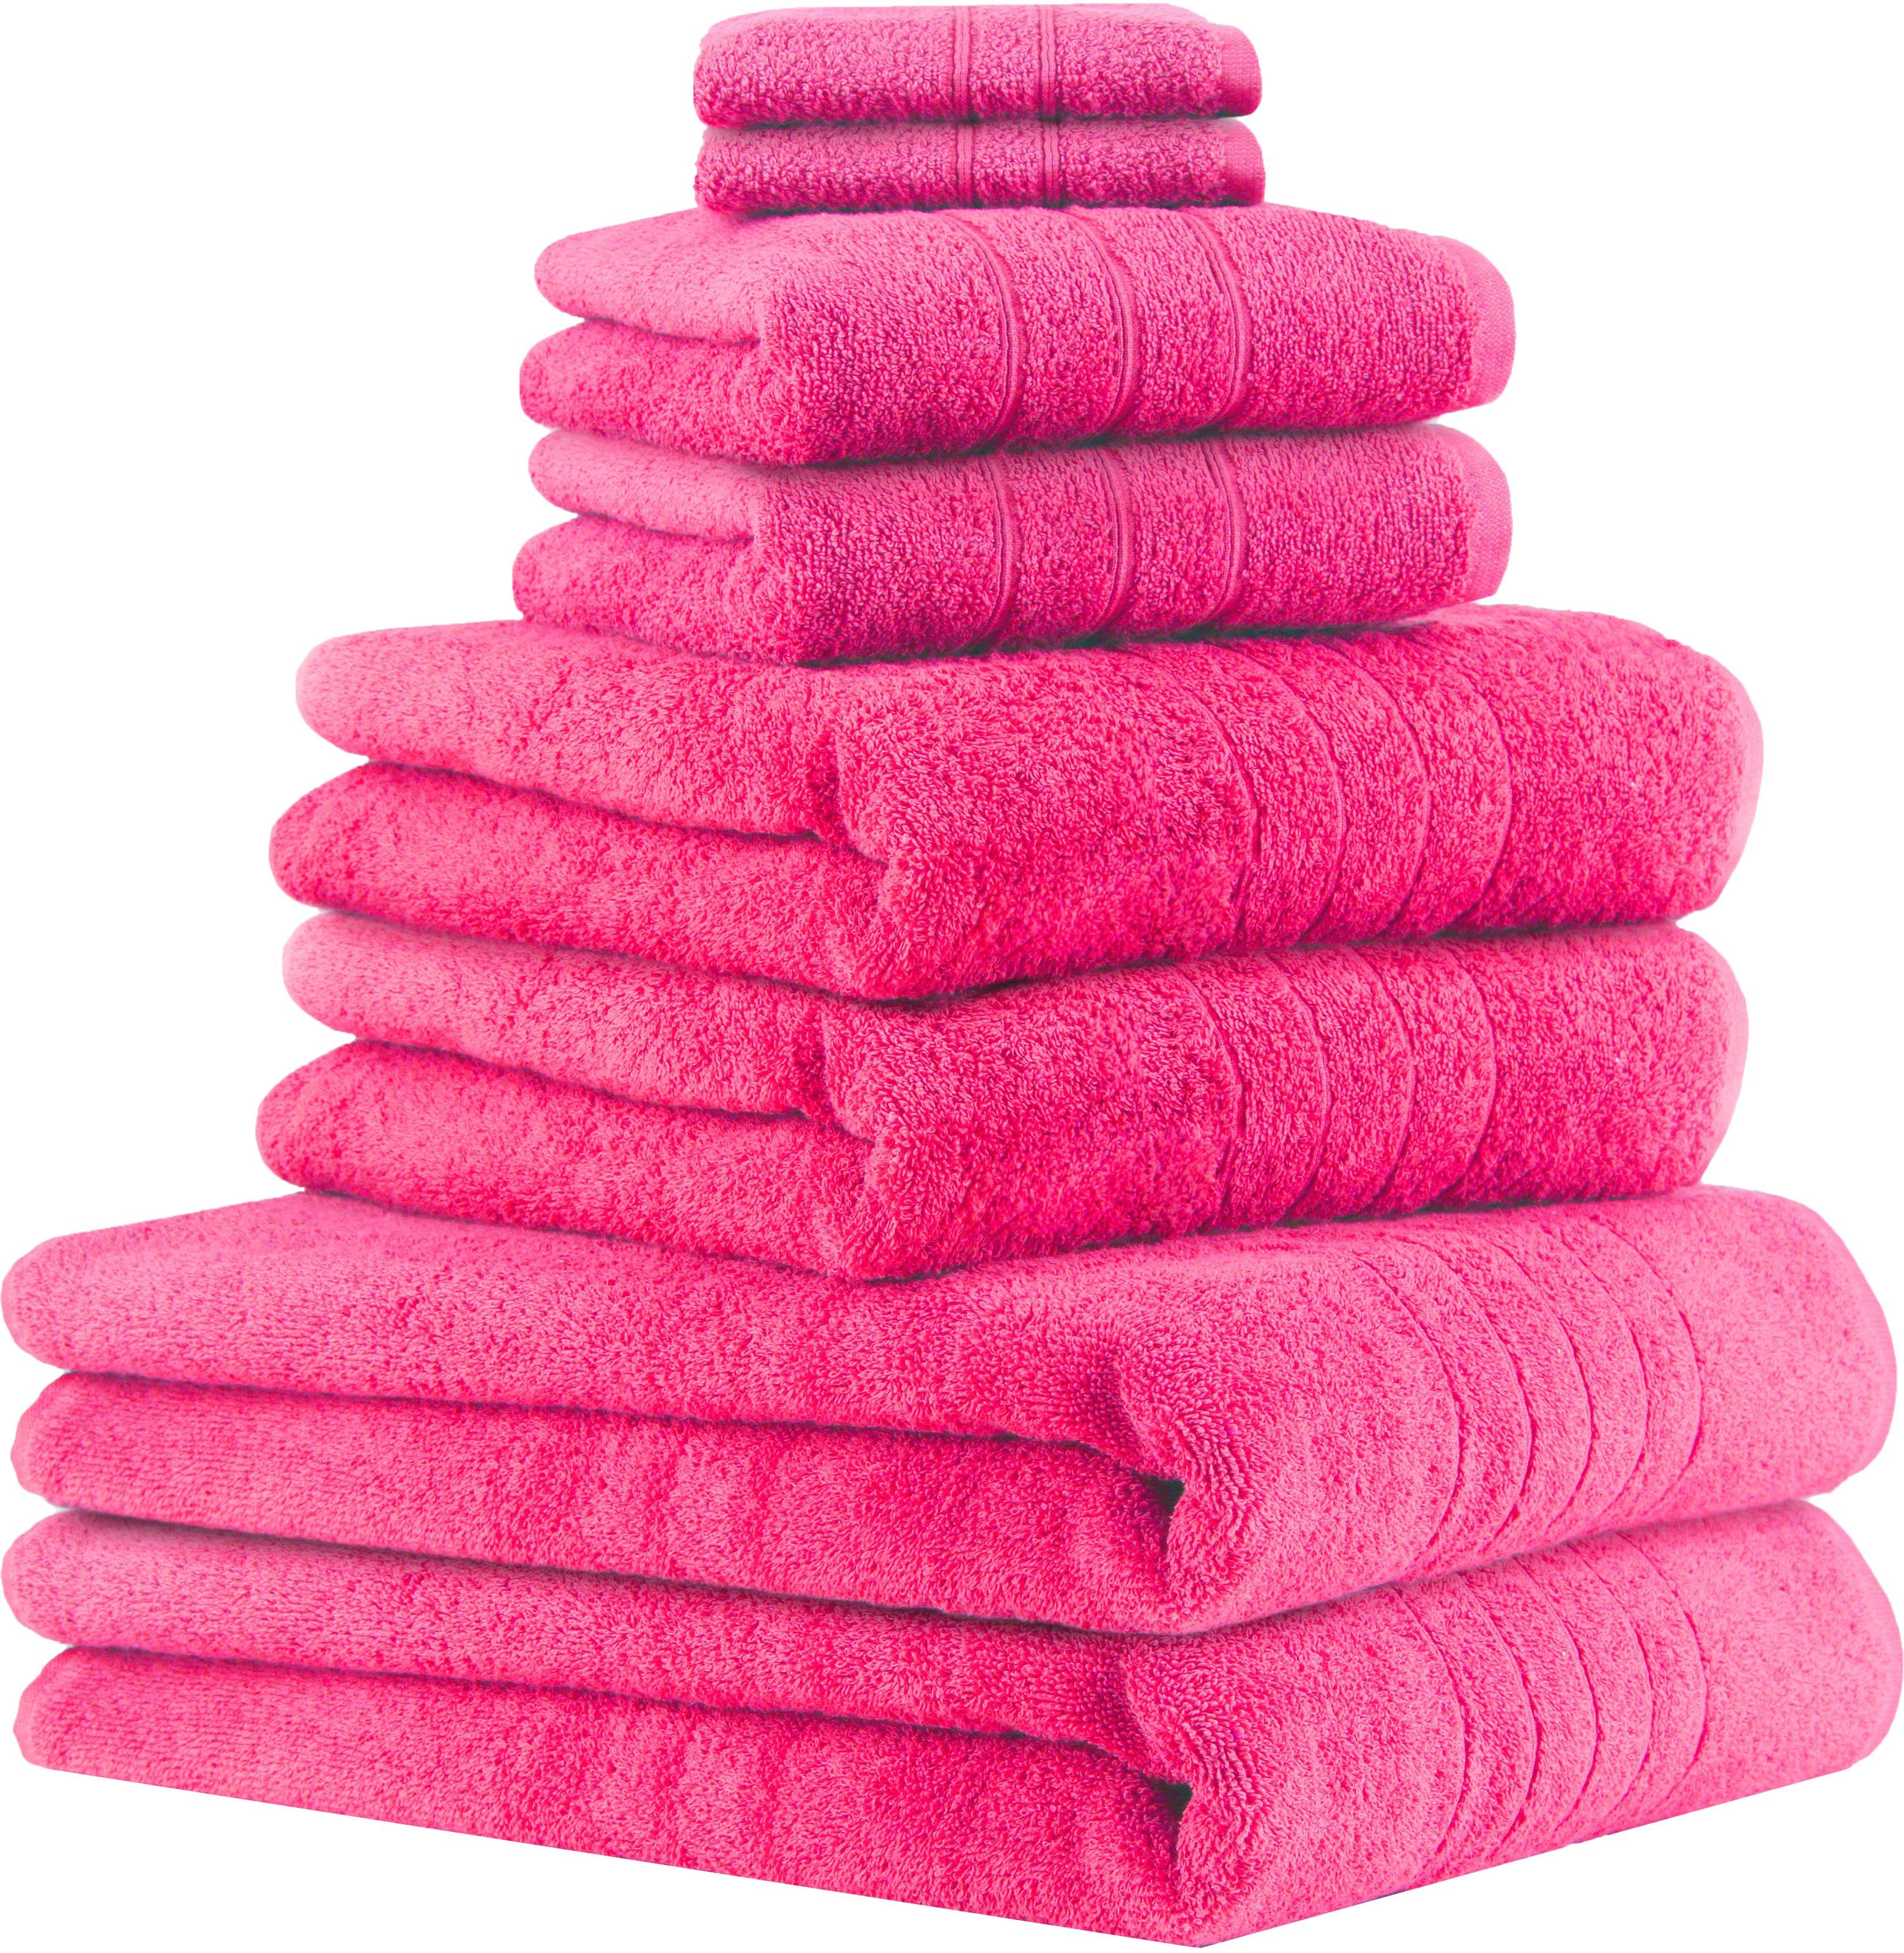 Betz Handtuch Set 8-TLG Handtuch-Set Deluxe 100% Baumwolle 2 Badetücher 2 Duschtücher 2 Handtücher 2 Seiftücher, 100% Baumwolle, (8-tlg) fuchsia | Handtuch-Sets